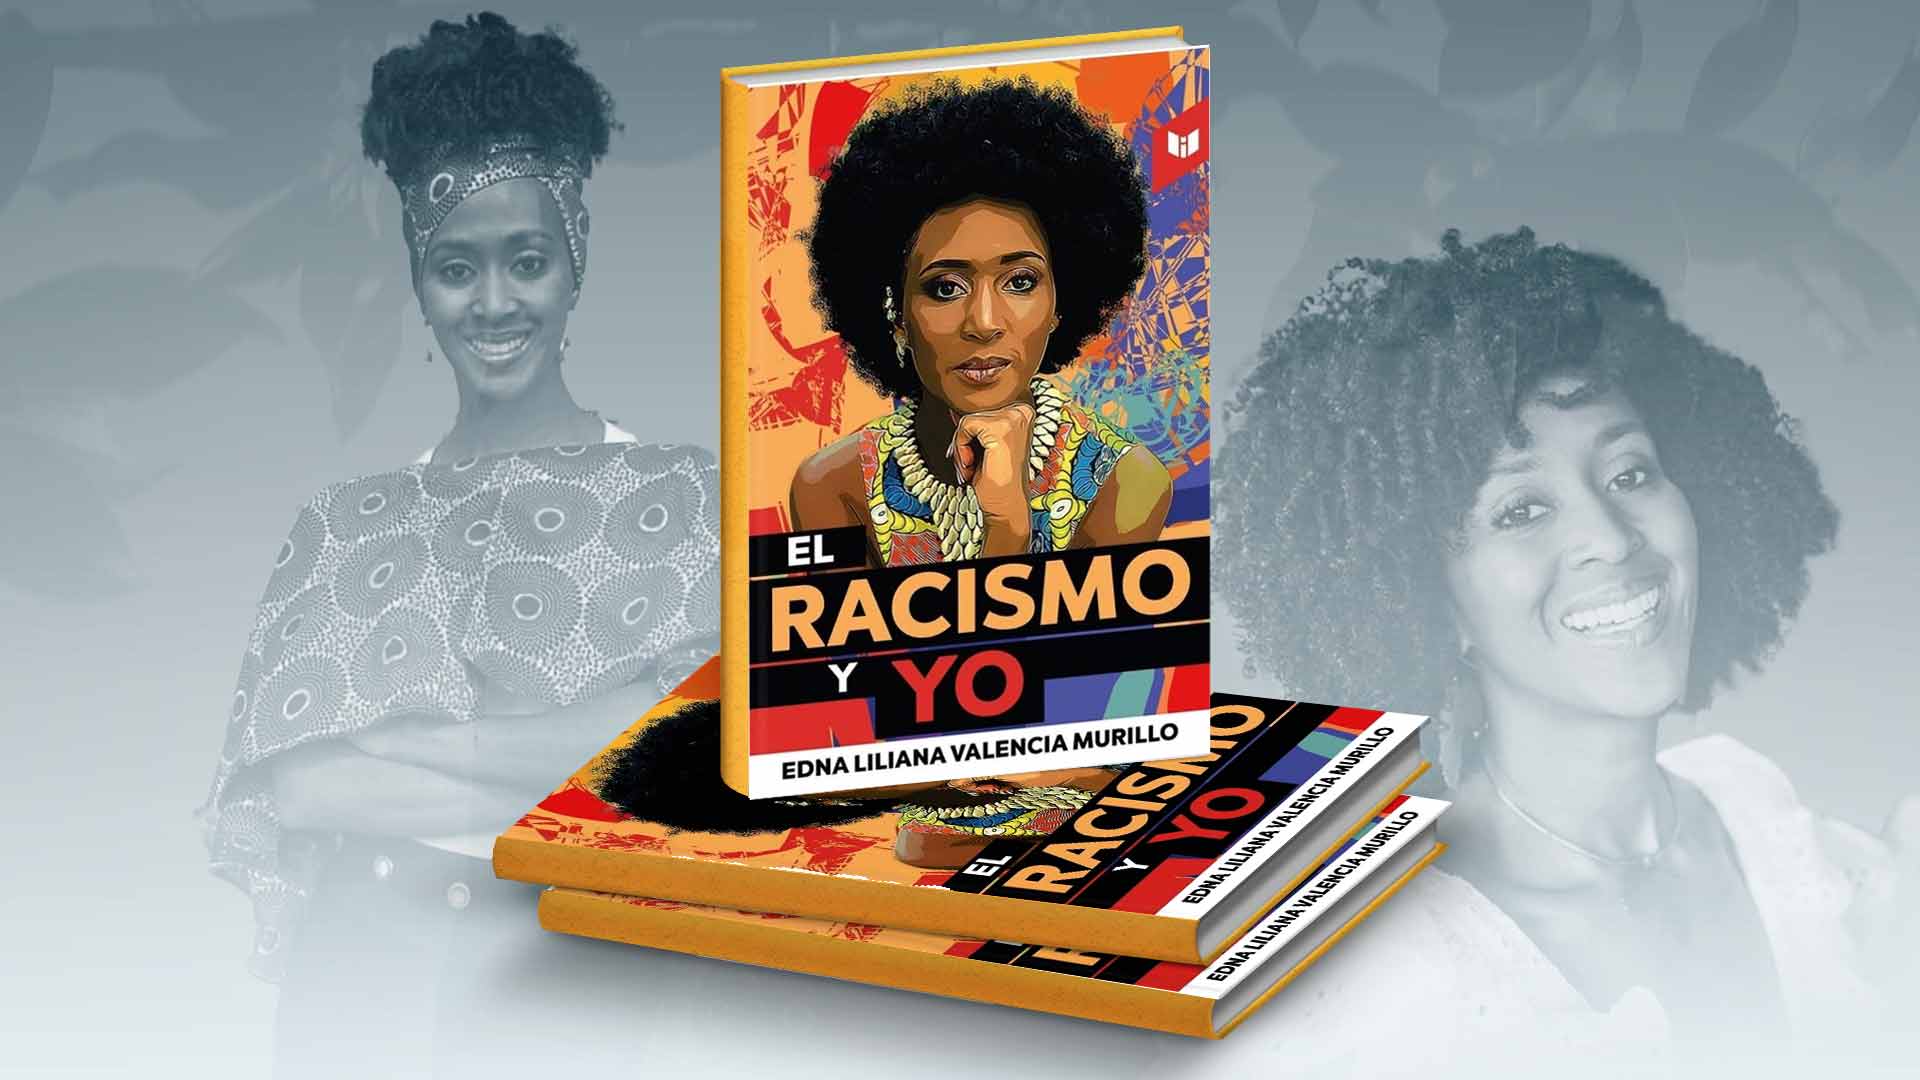 “No es suficiente con no ser racista, hay que ser antiracista”: Edna Liliana Valencia presenta su primer libro ‘El racismo y yo’ en la Filbo 2022